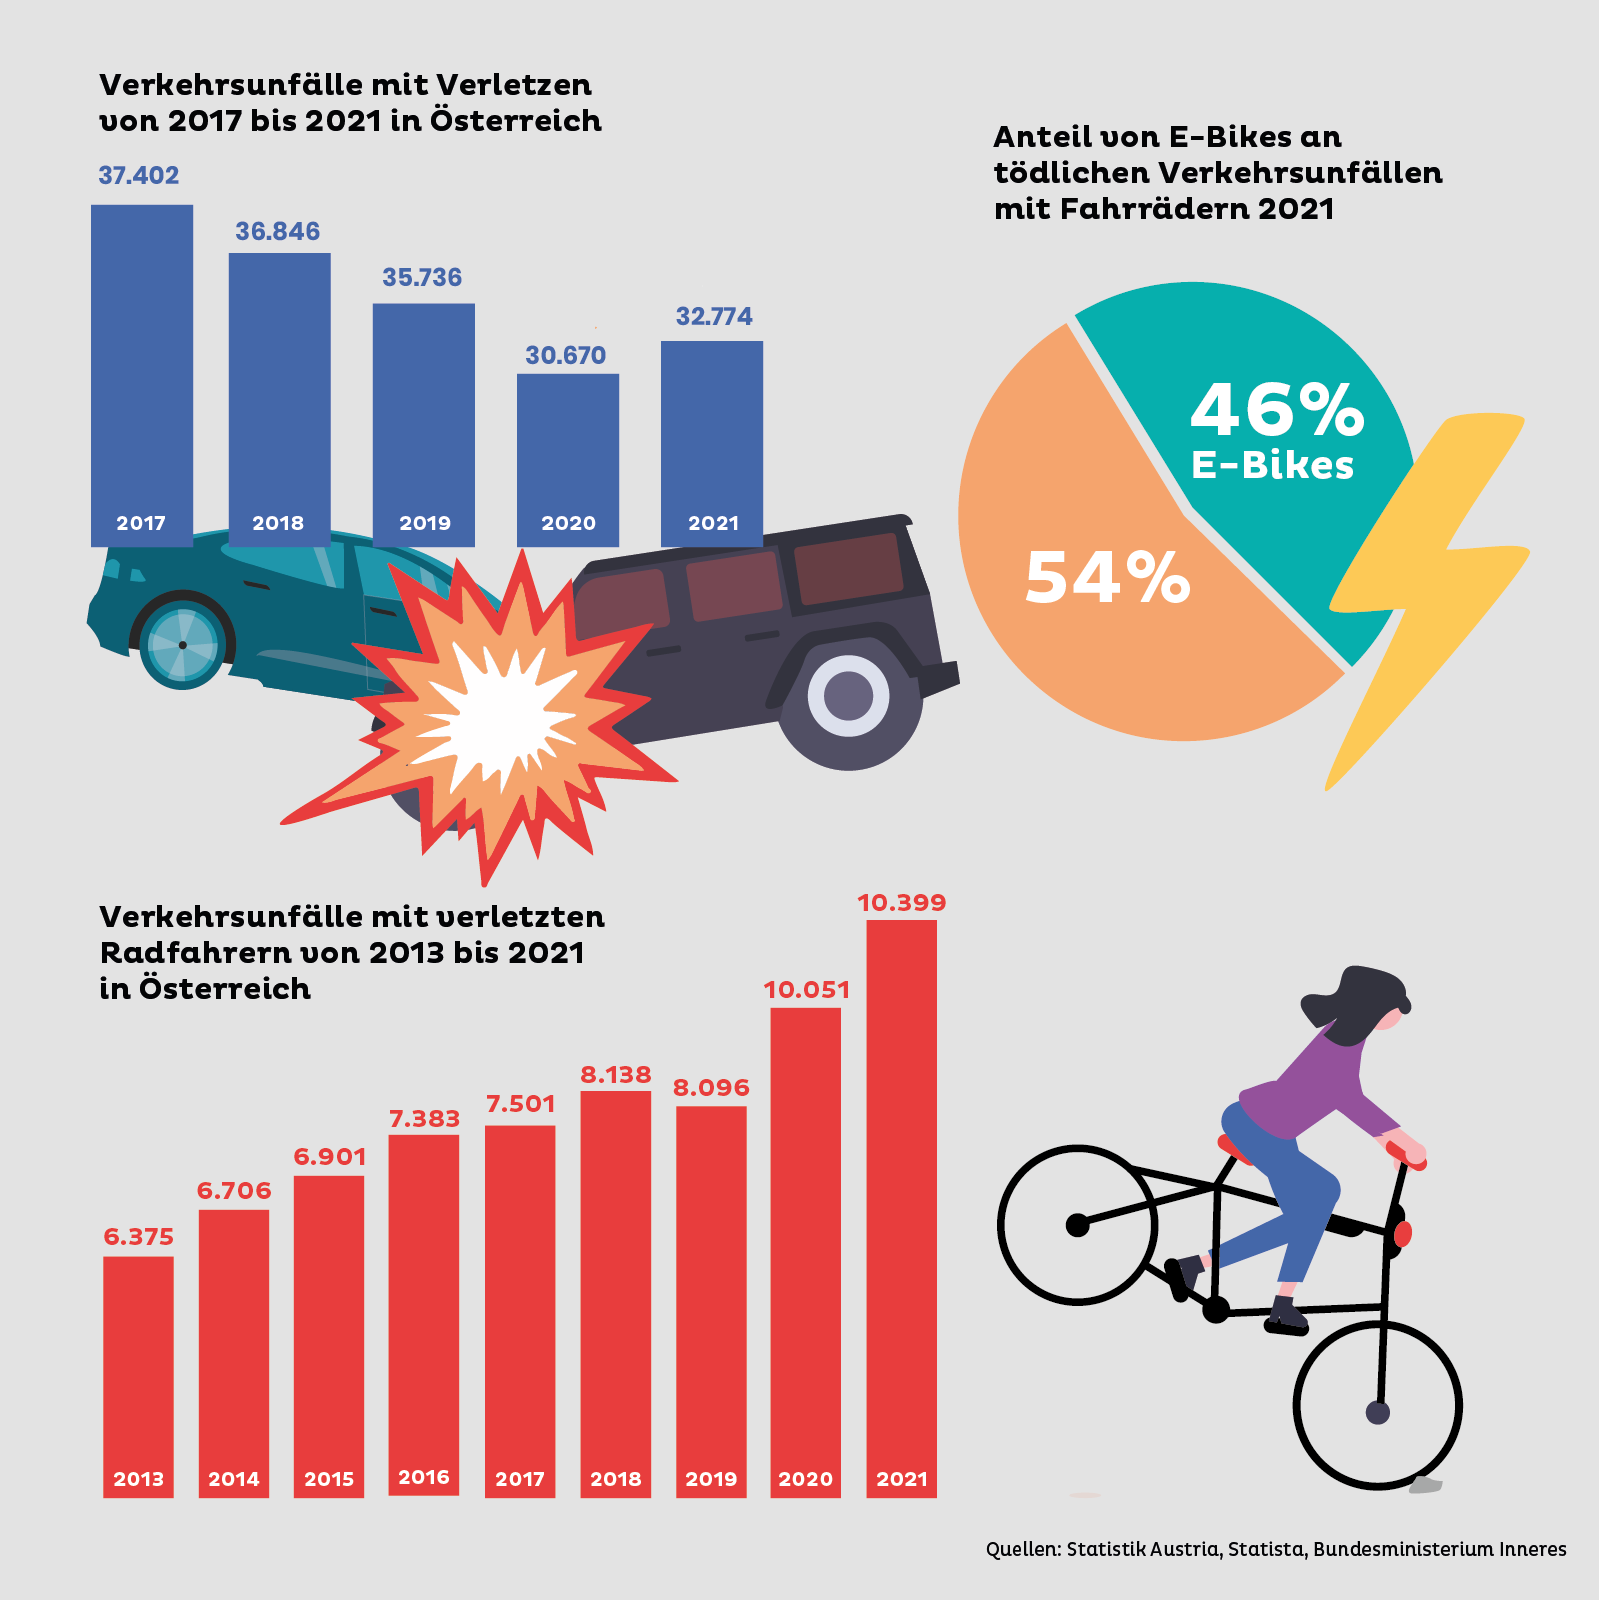 Die Zahl der schweren Verkehrsunfälle sinkt, aber die Zahl der verletzten Radfahrer steigt. 